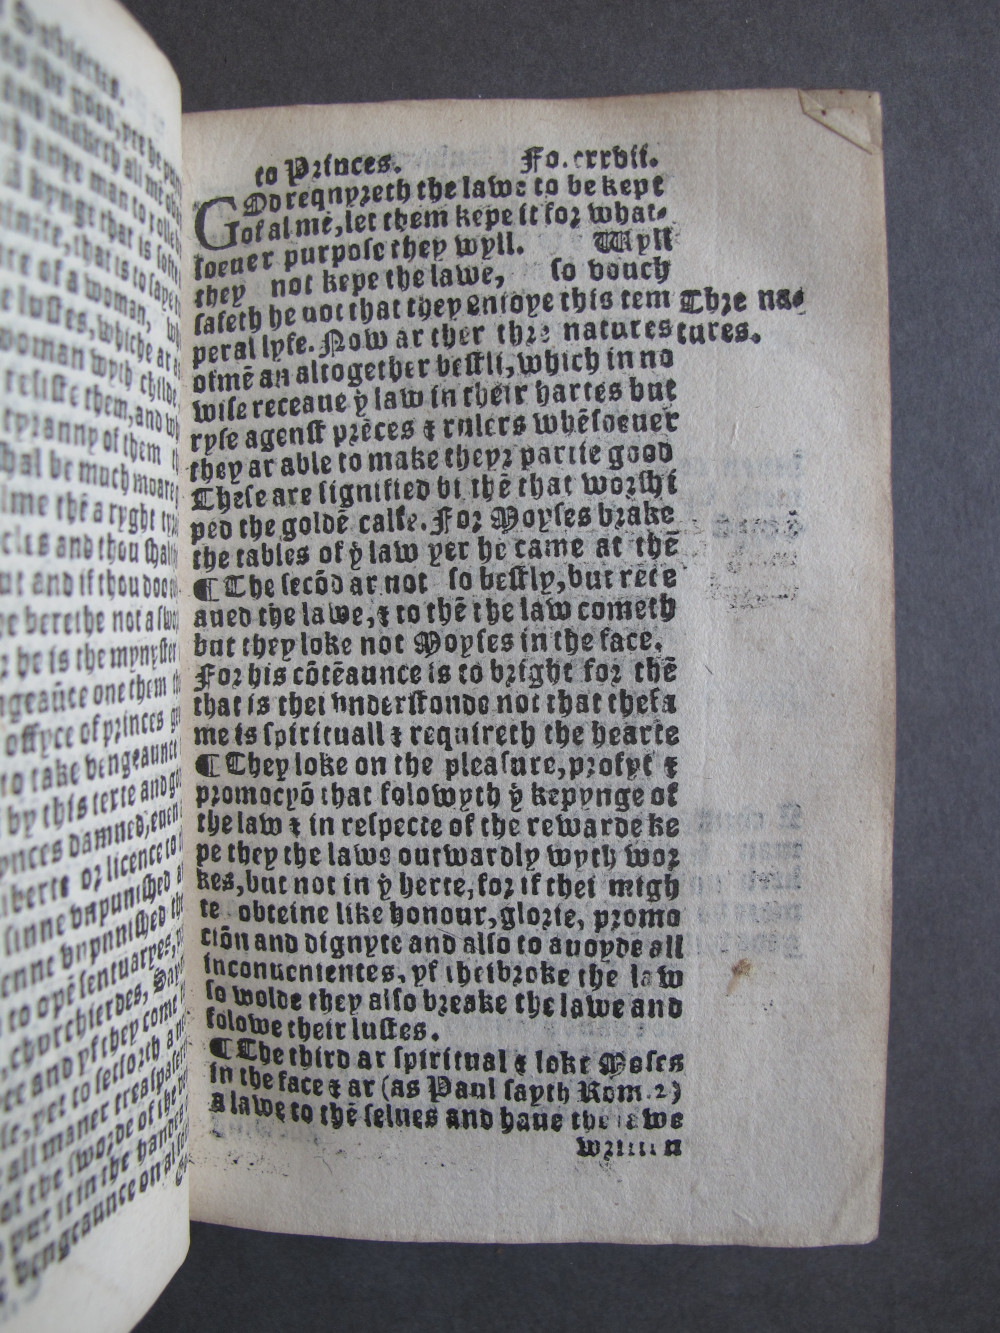 1 Folio E5 recto